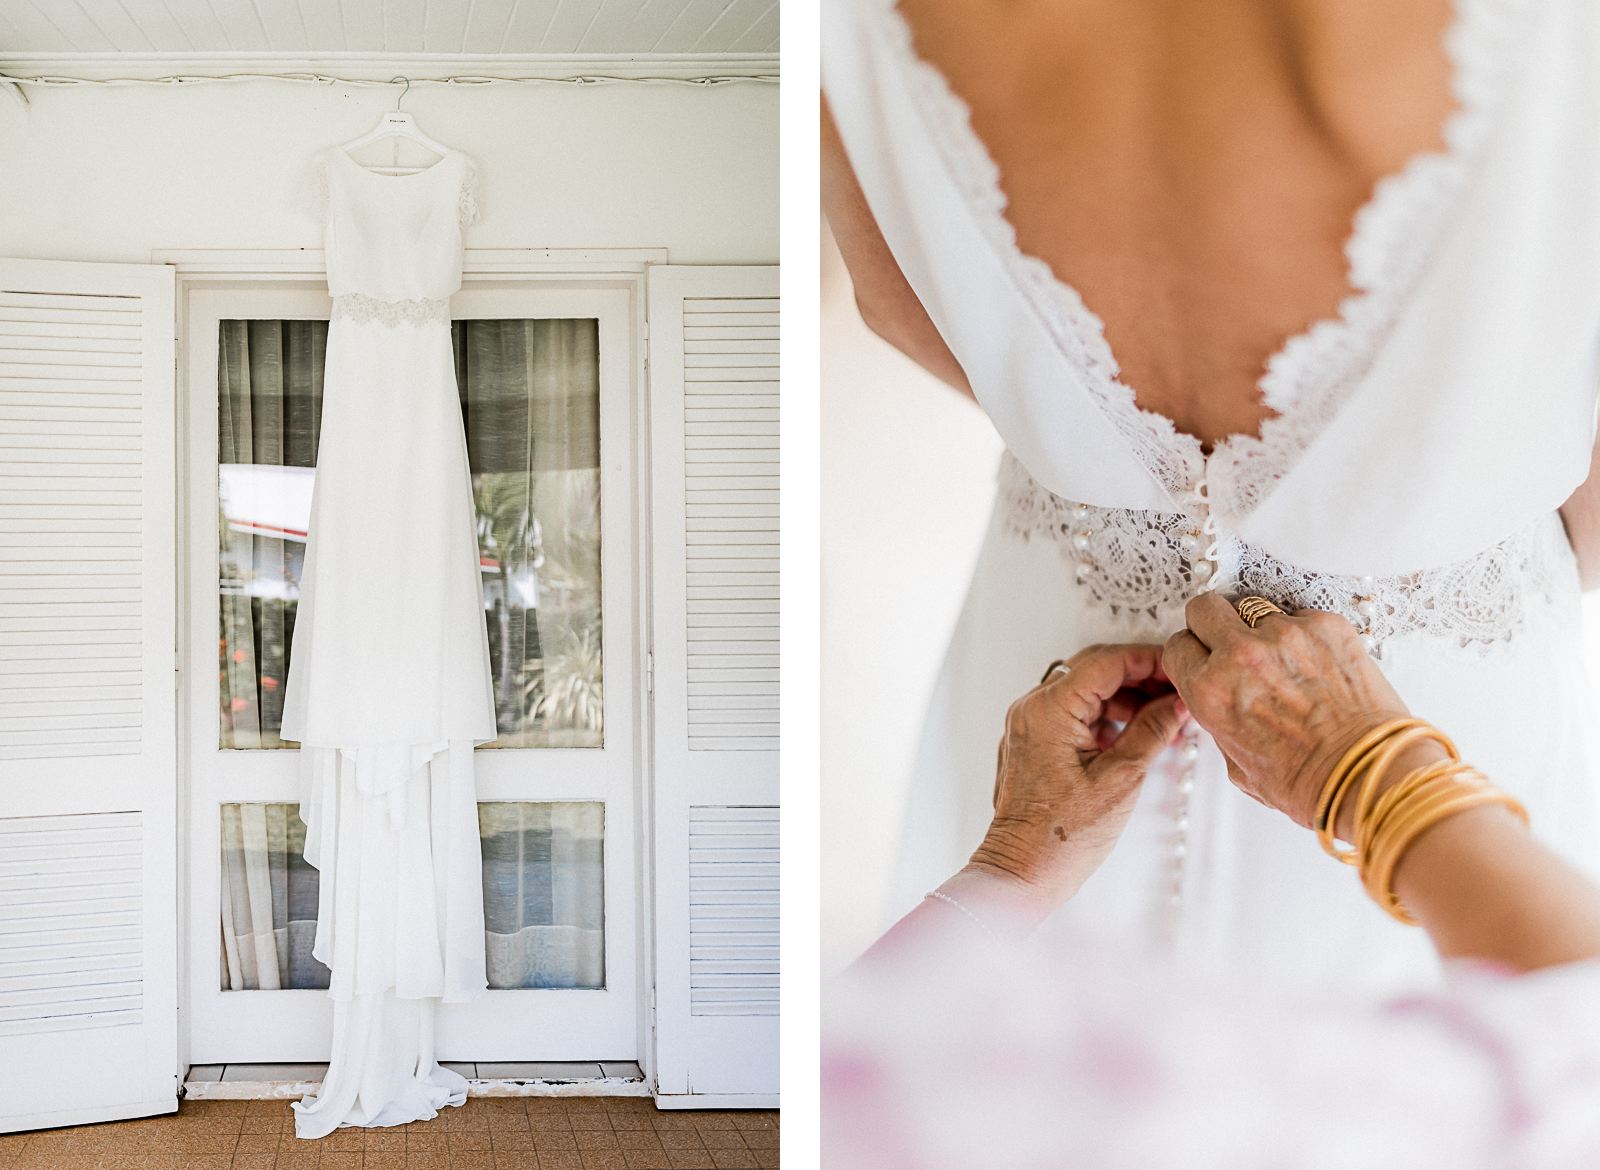 Photographie de Mathieu Dété, photographe de mariage à Saint-Denis sur l'île de la Réunion 974, présentant les détails de la robe et des mains de la maman de la mariée lors de l'habillage de la mariée